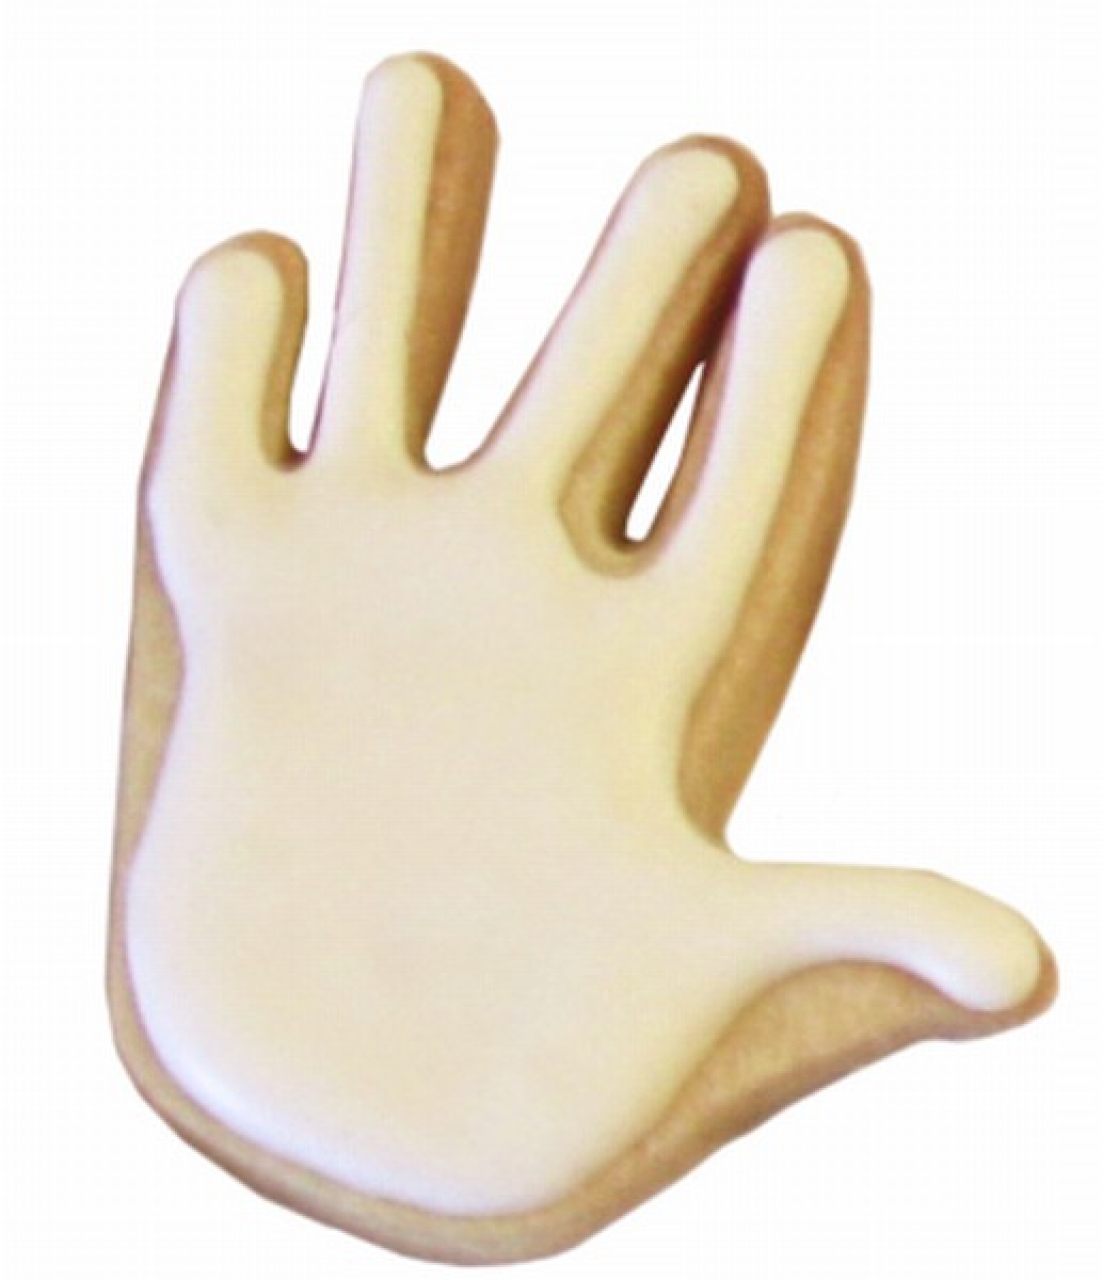 Plätzchen Ausstecher "Hand" , 6,5 cm, Edelstahl